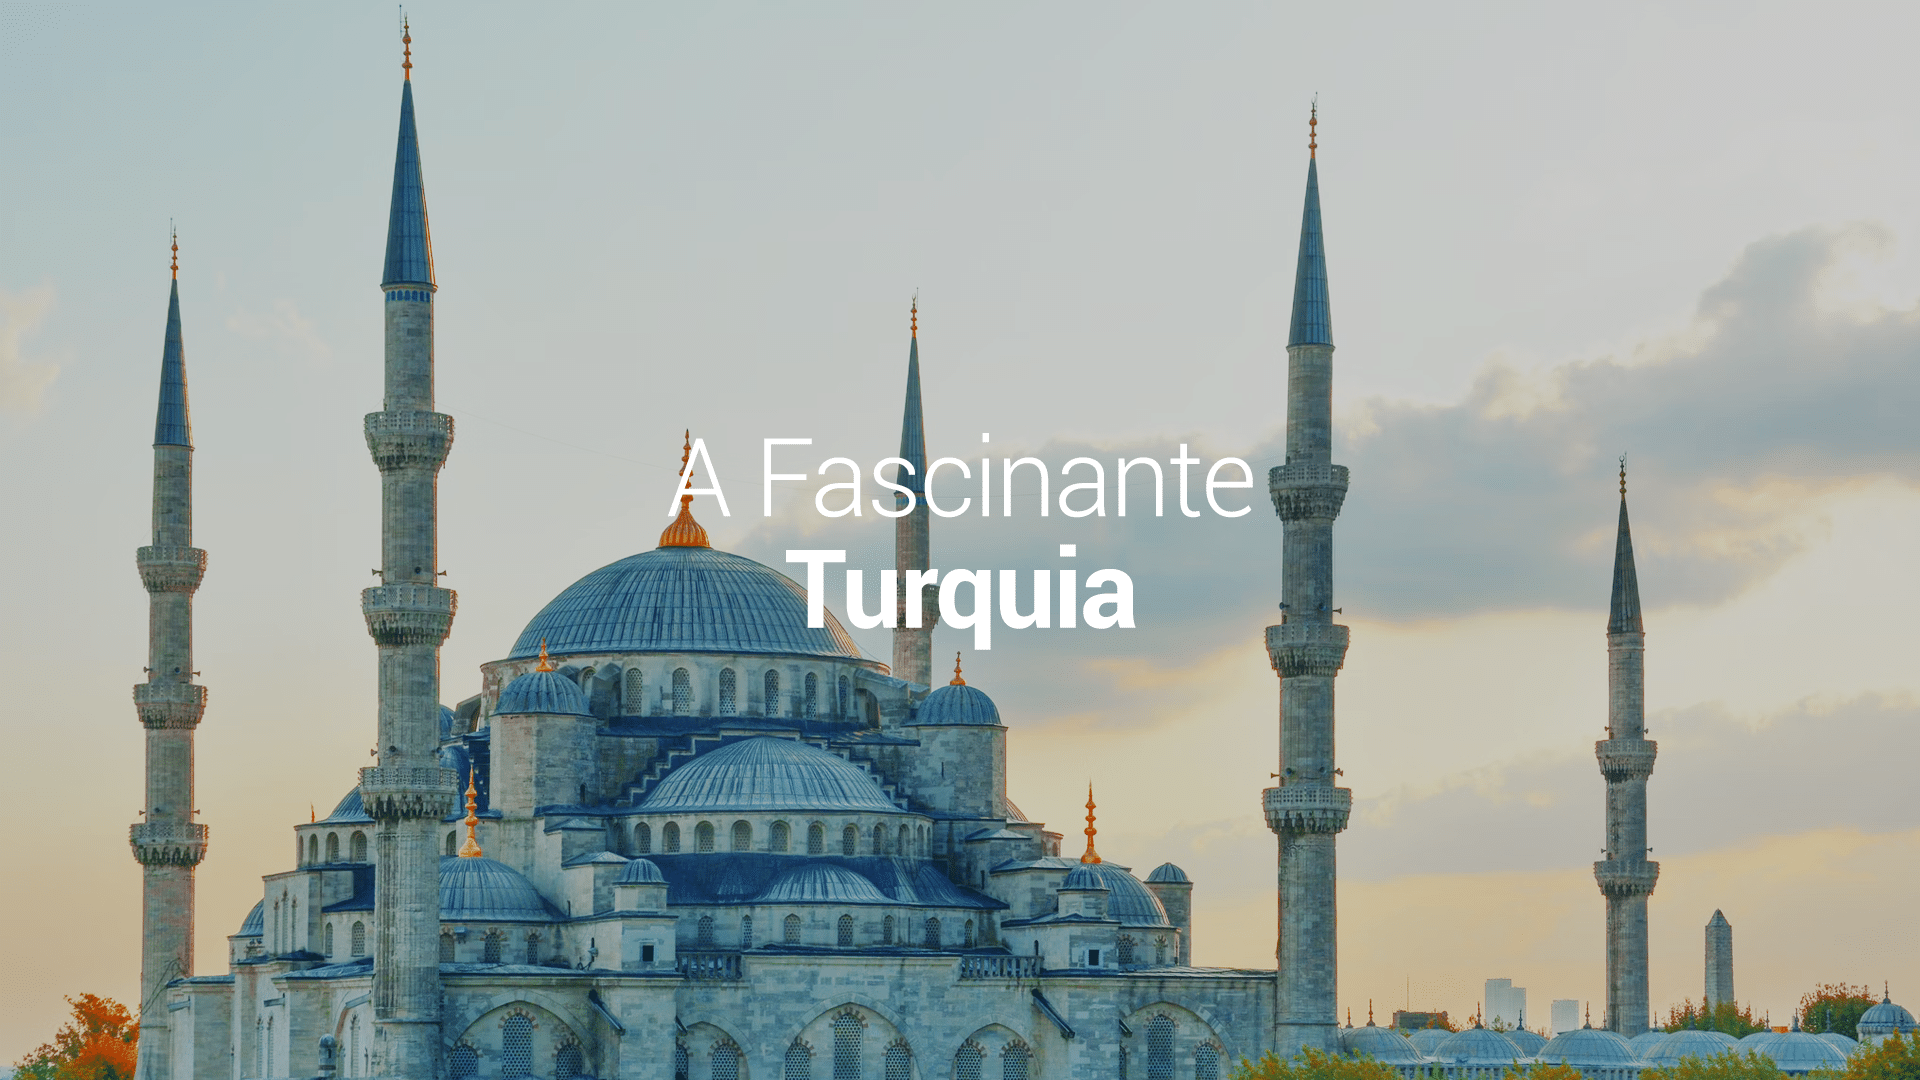 viagens premium fascinante turquia